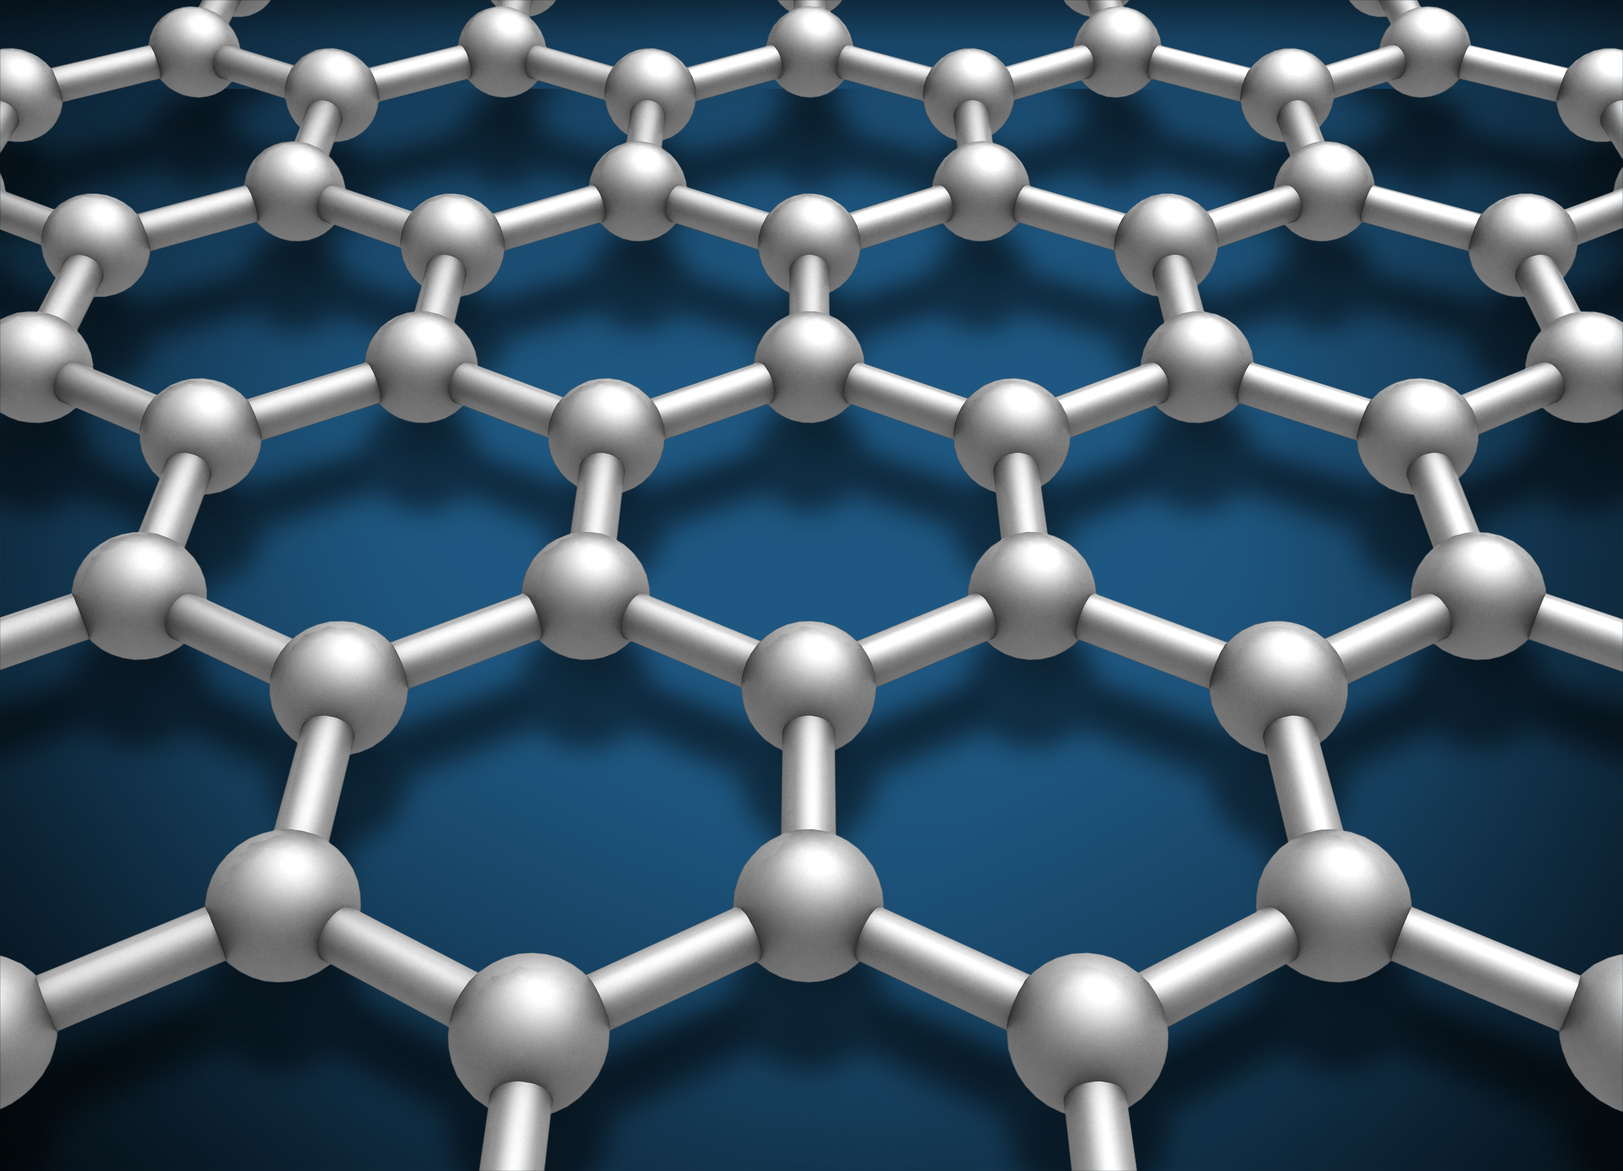 StatNano Develops a New Database: Nanomaterials